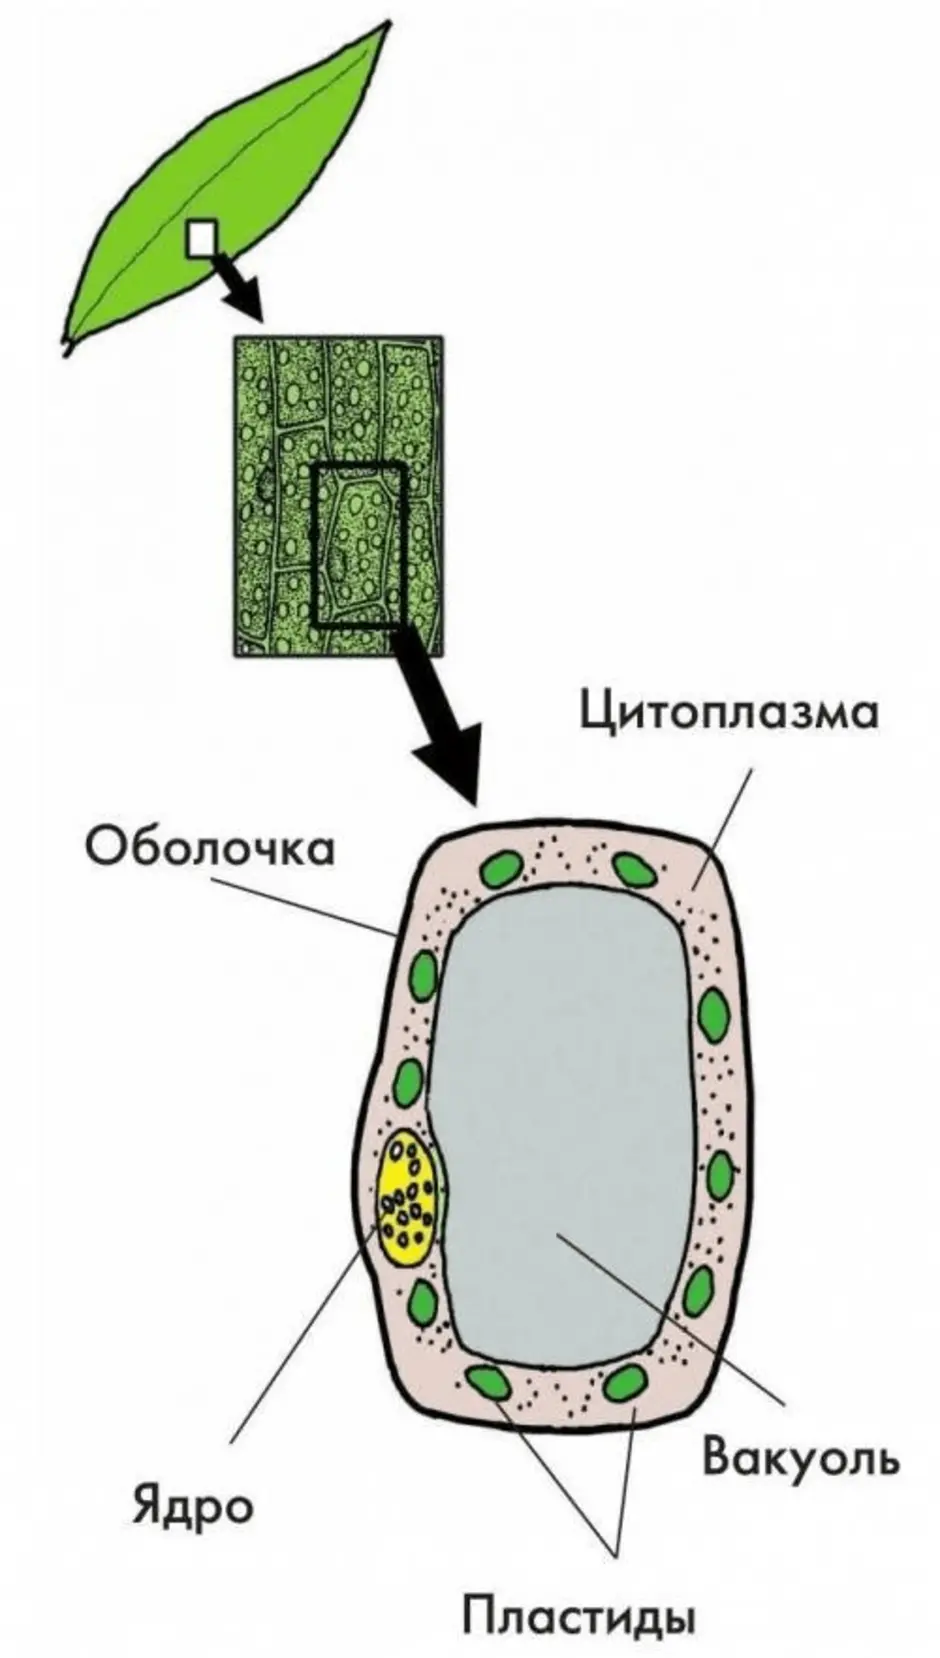 Клетка листа смородины. Строение клетки листа элодеи. Части клетки листа элодеи под микроскопом. Строение клетки листа элодеи под микроскопом. Пластиды элодеи.